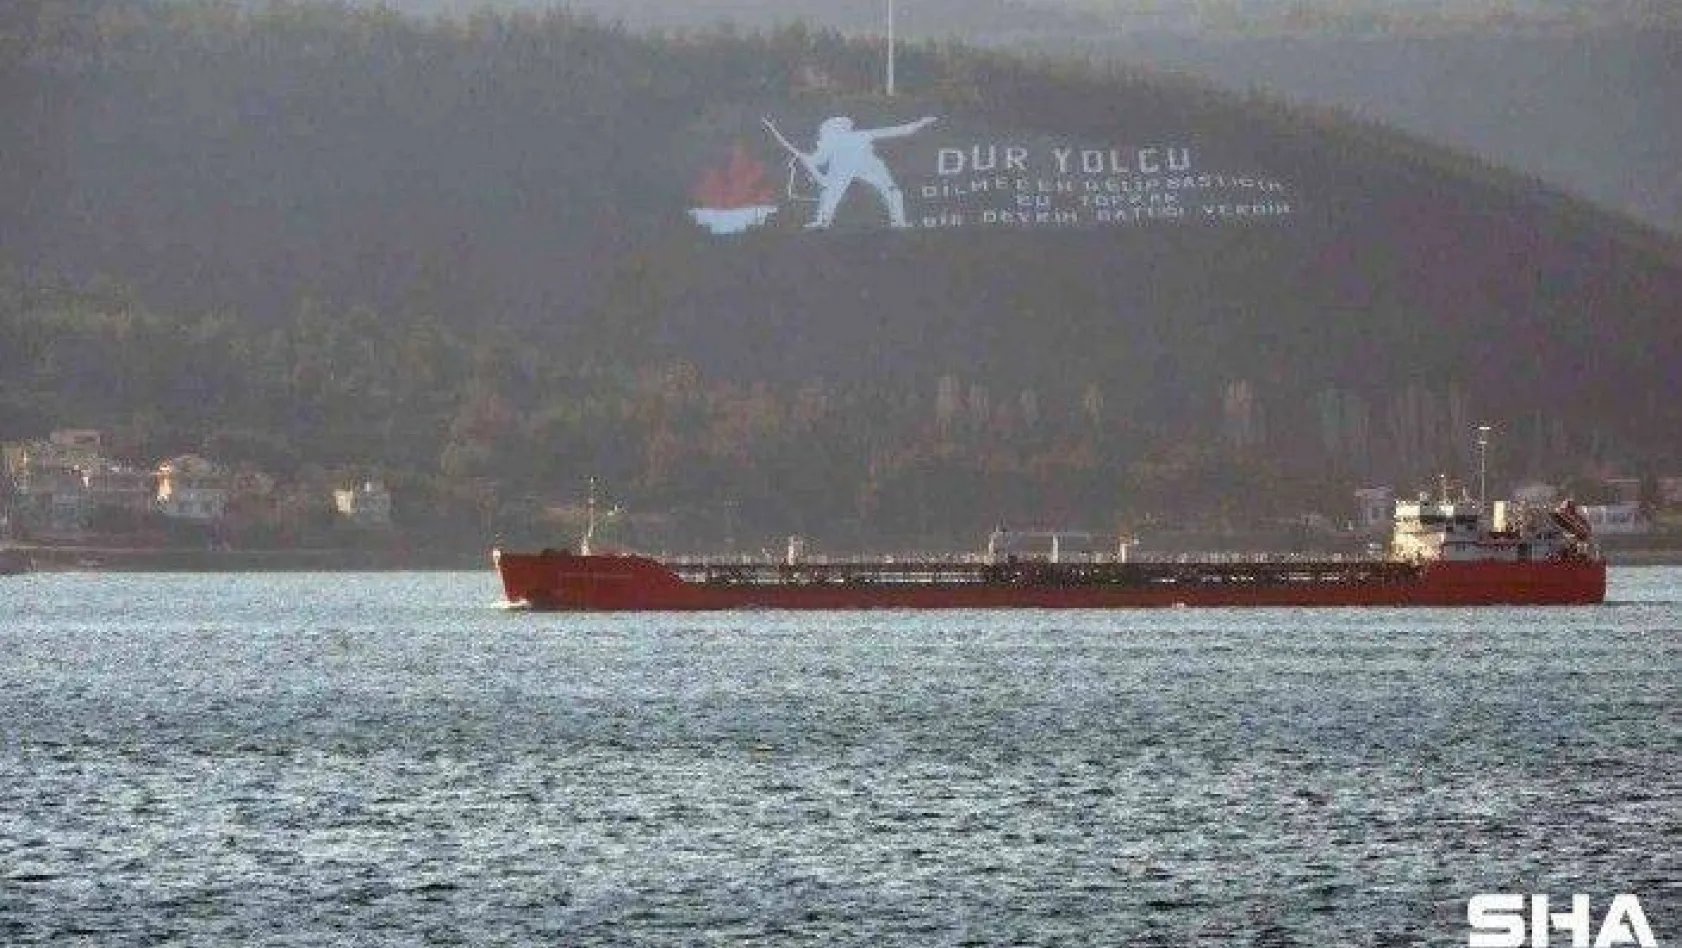 Rusya'dan ayçiçek yağı taşıyan gemi Çanakkale Boğazı'ndan geçti